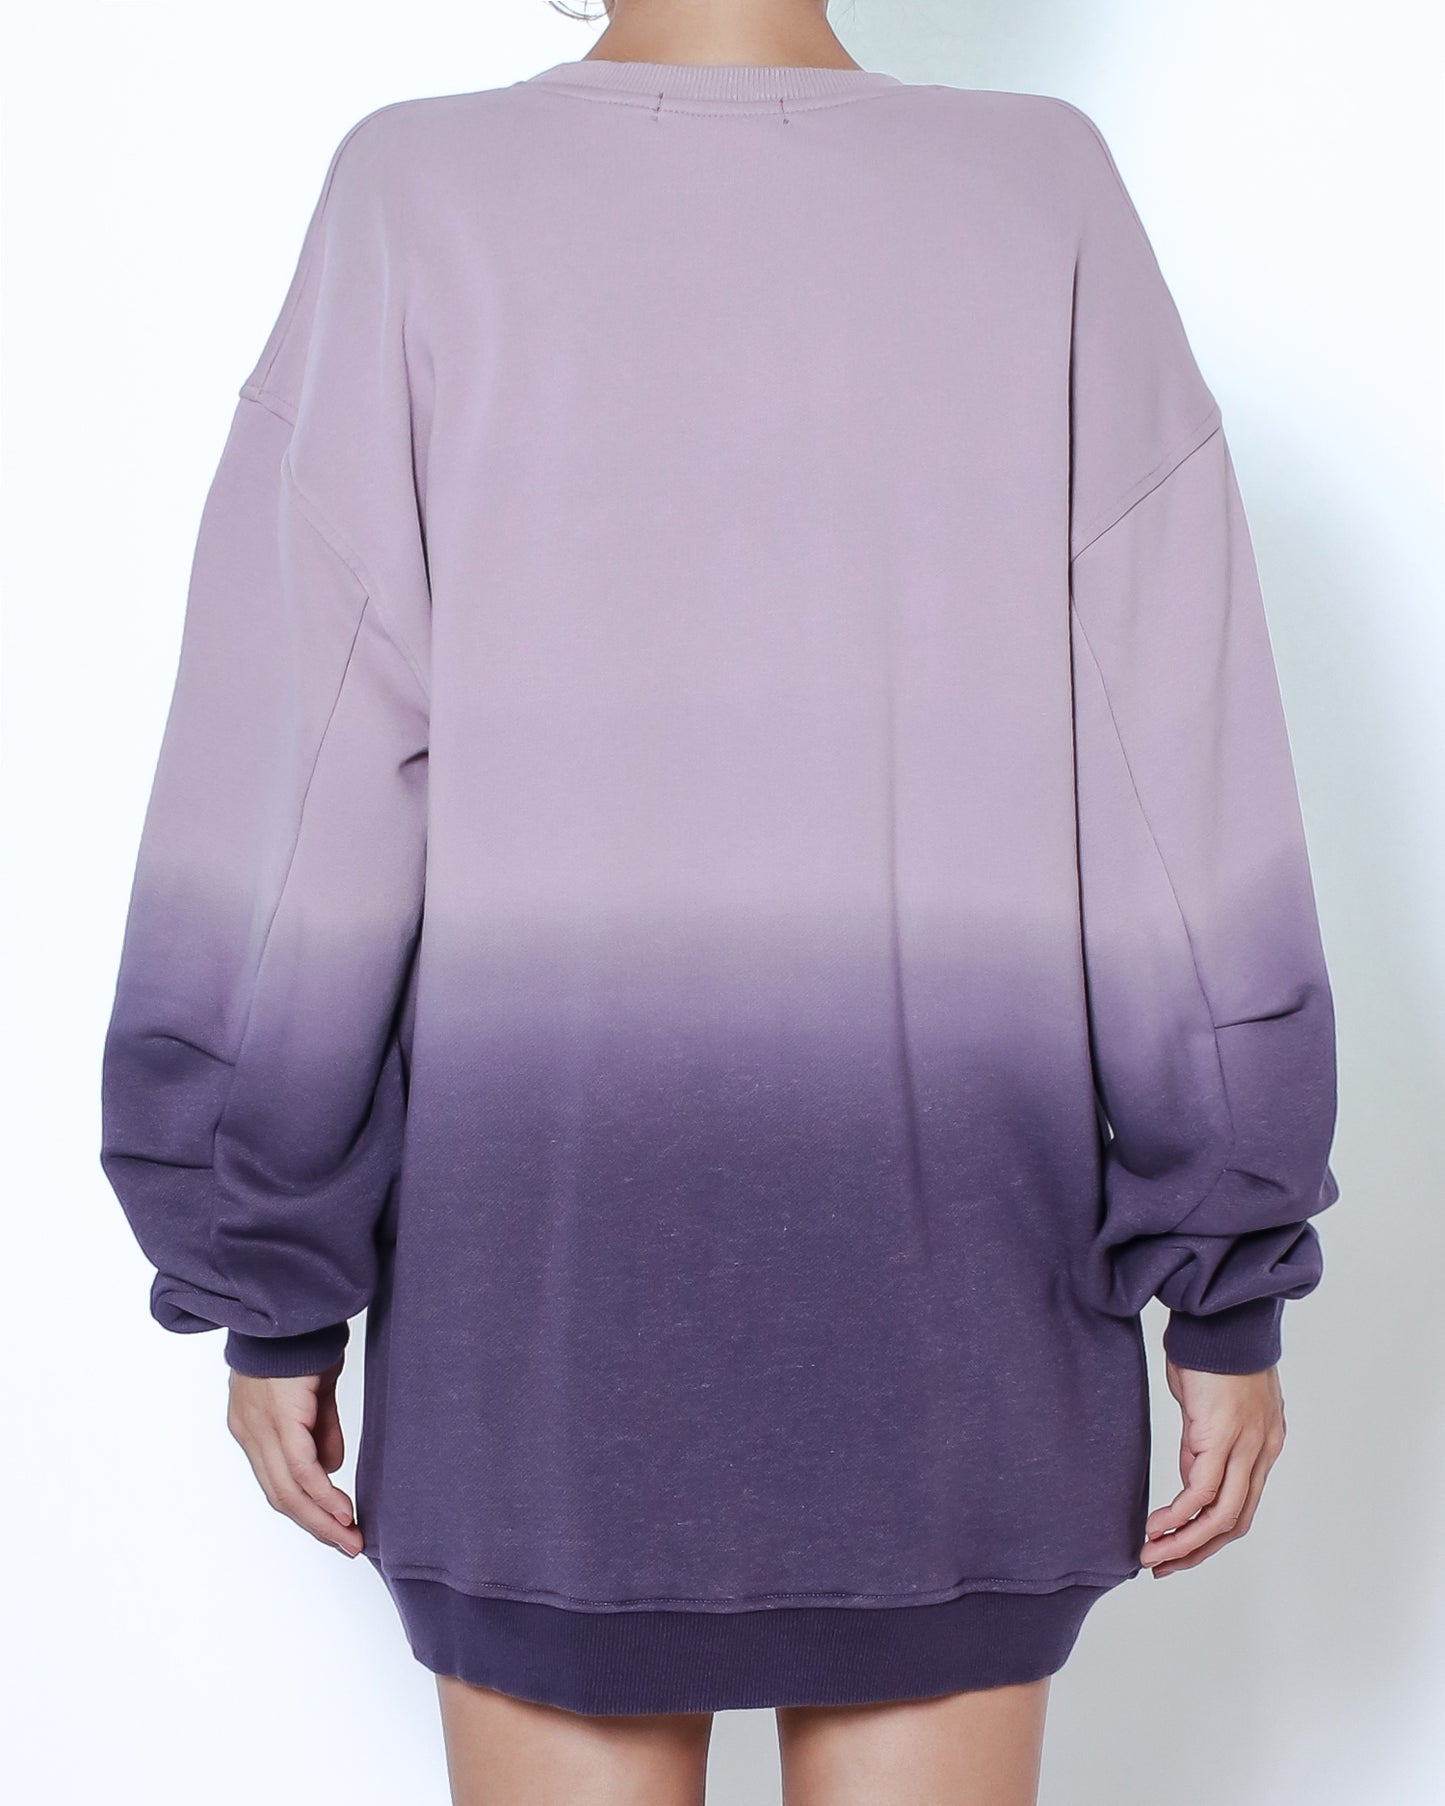 紫色紮染運動衫 *預購*